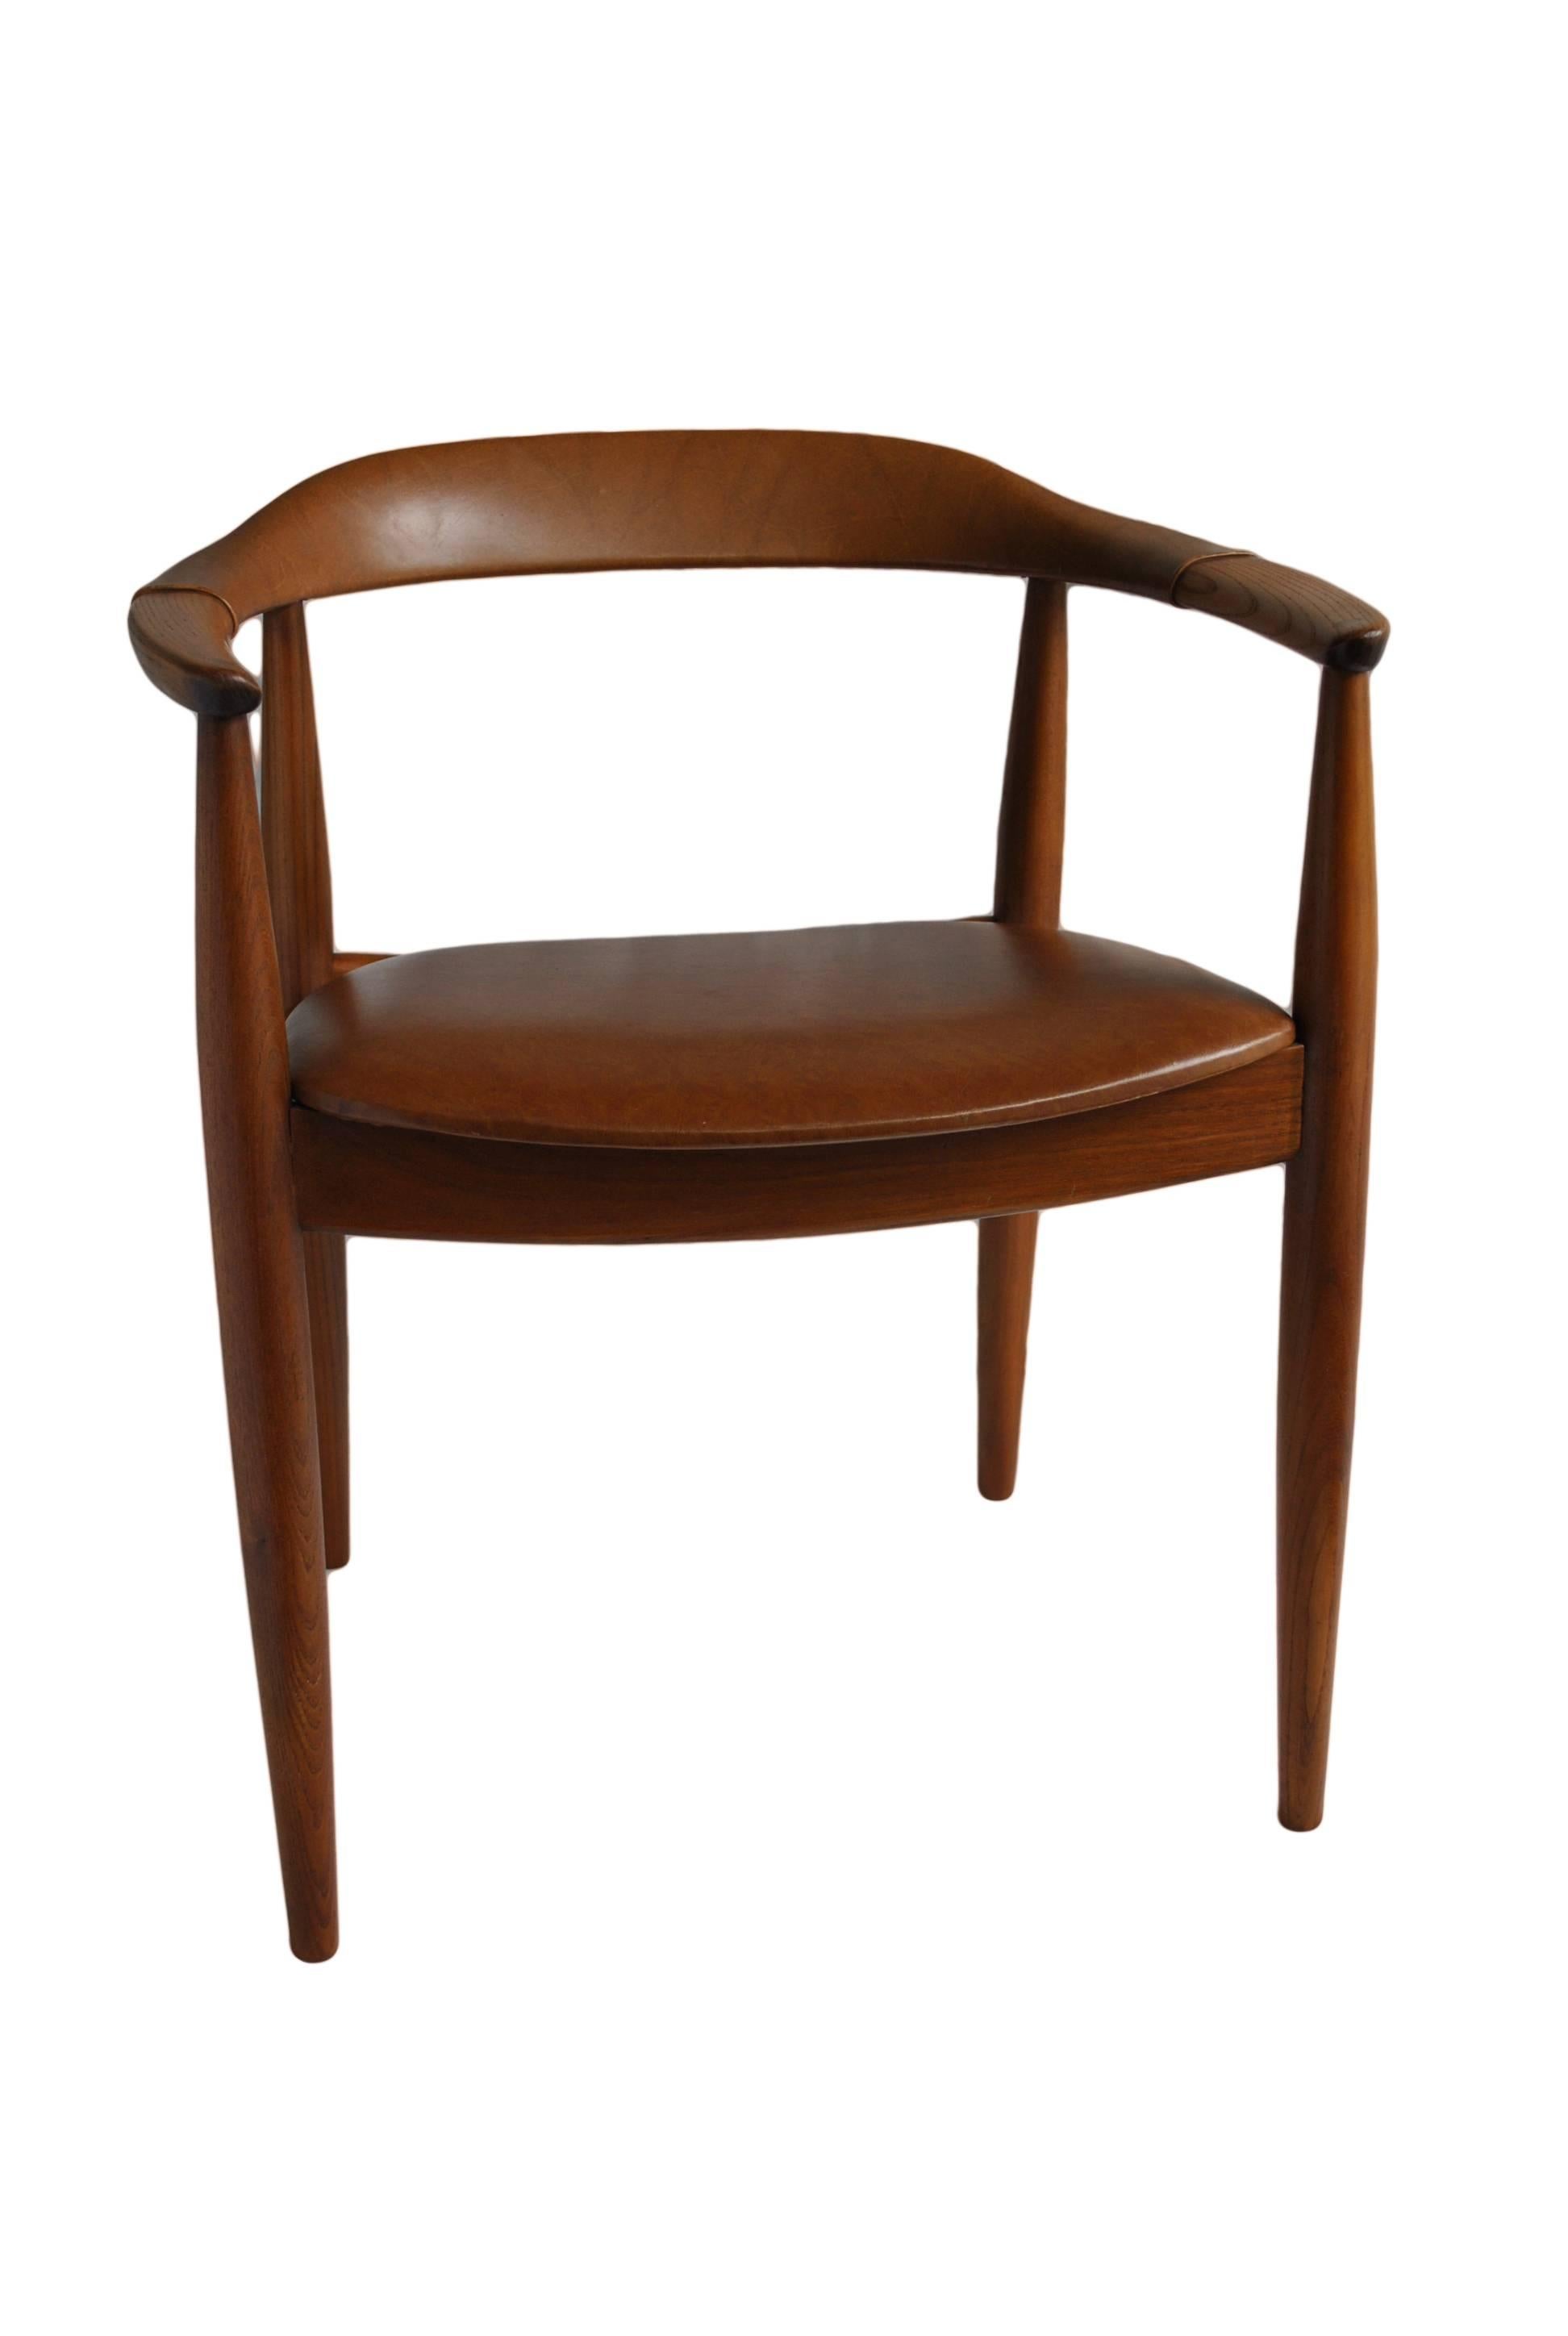 Illum Wikkelso Chair for N. Eilersen 1